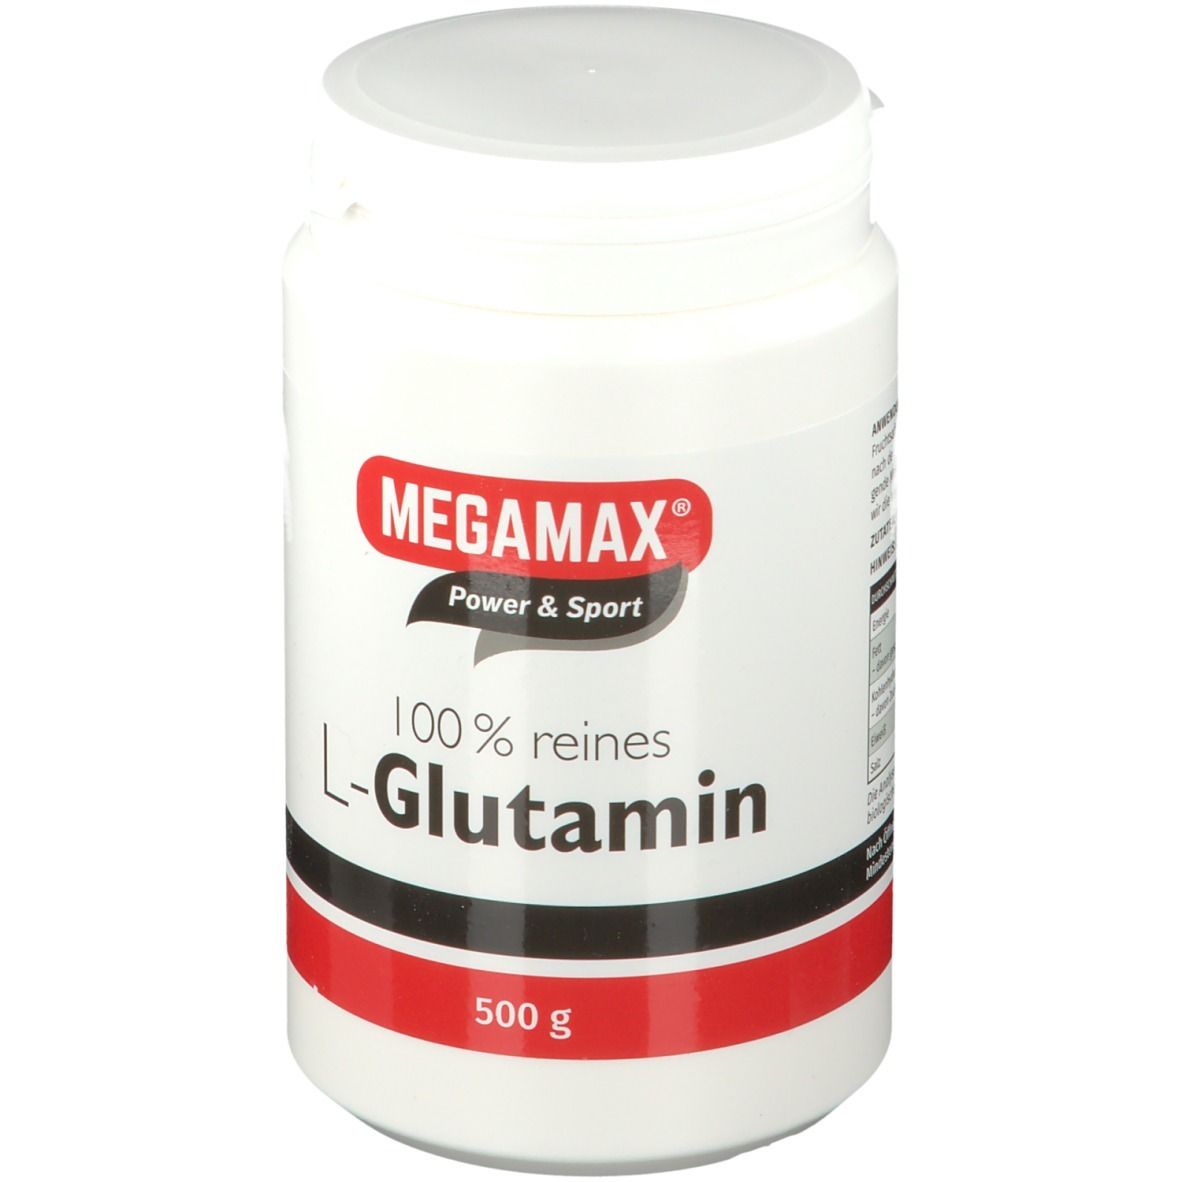 MEGAMAX® Power & Sport L-Glutamin 100% rein